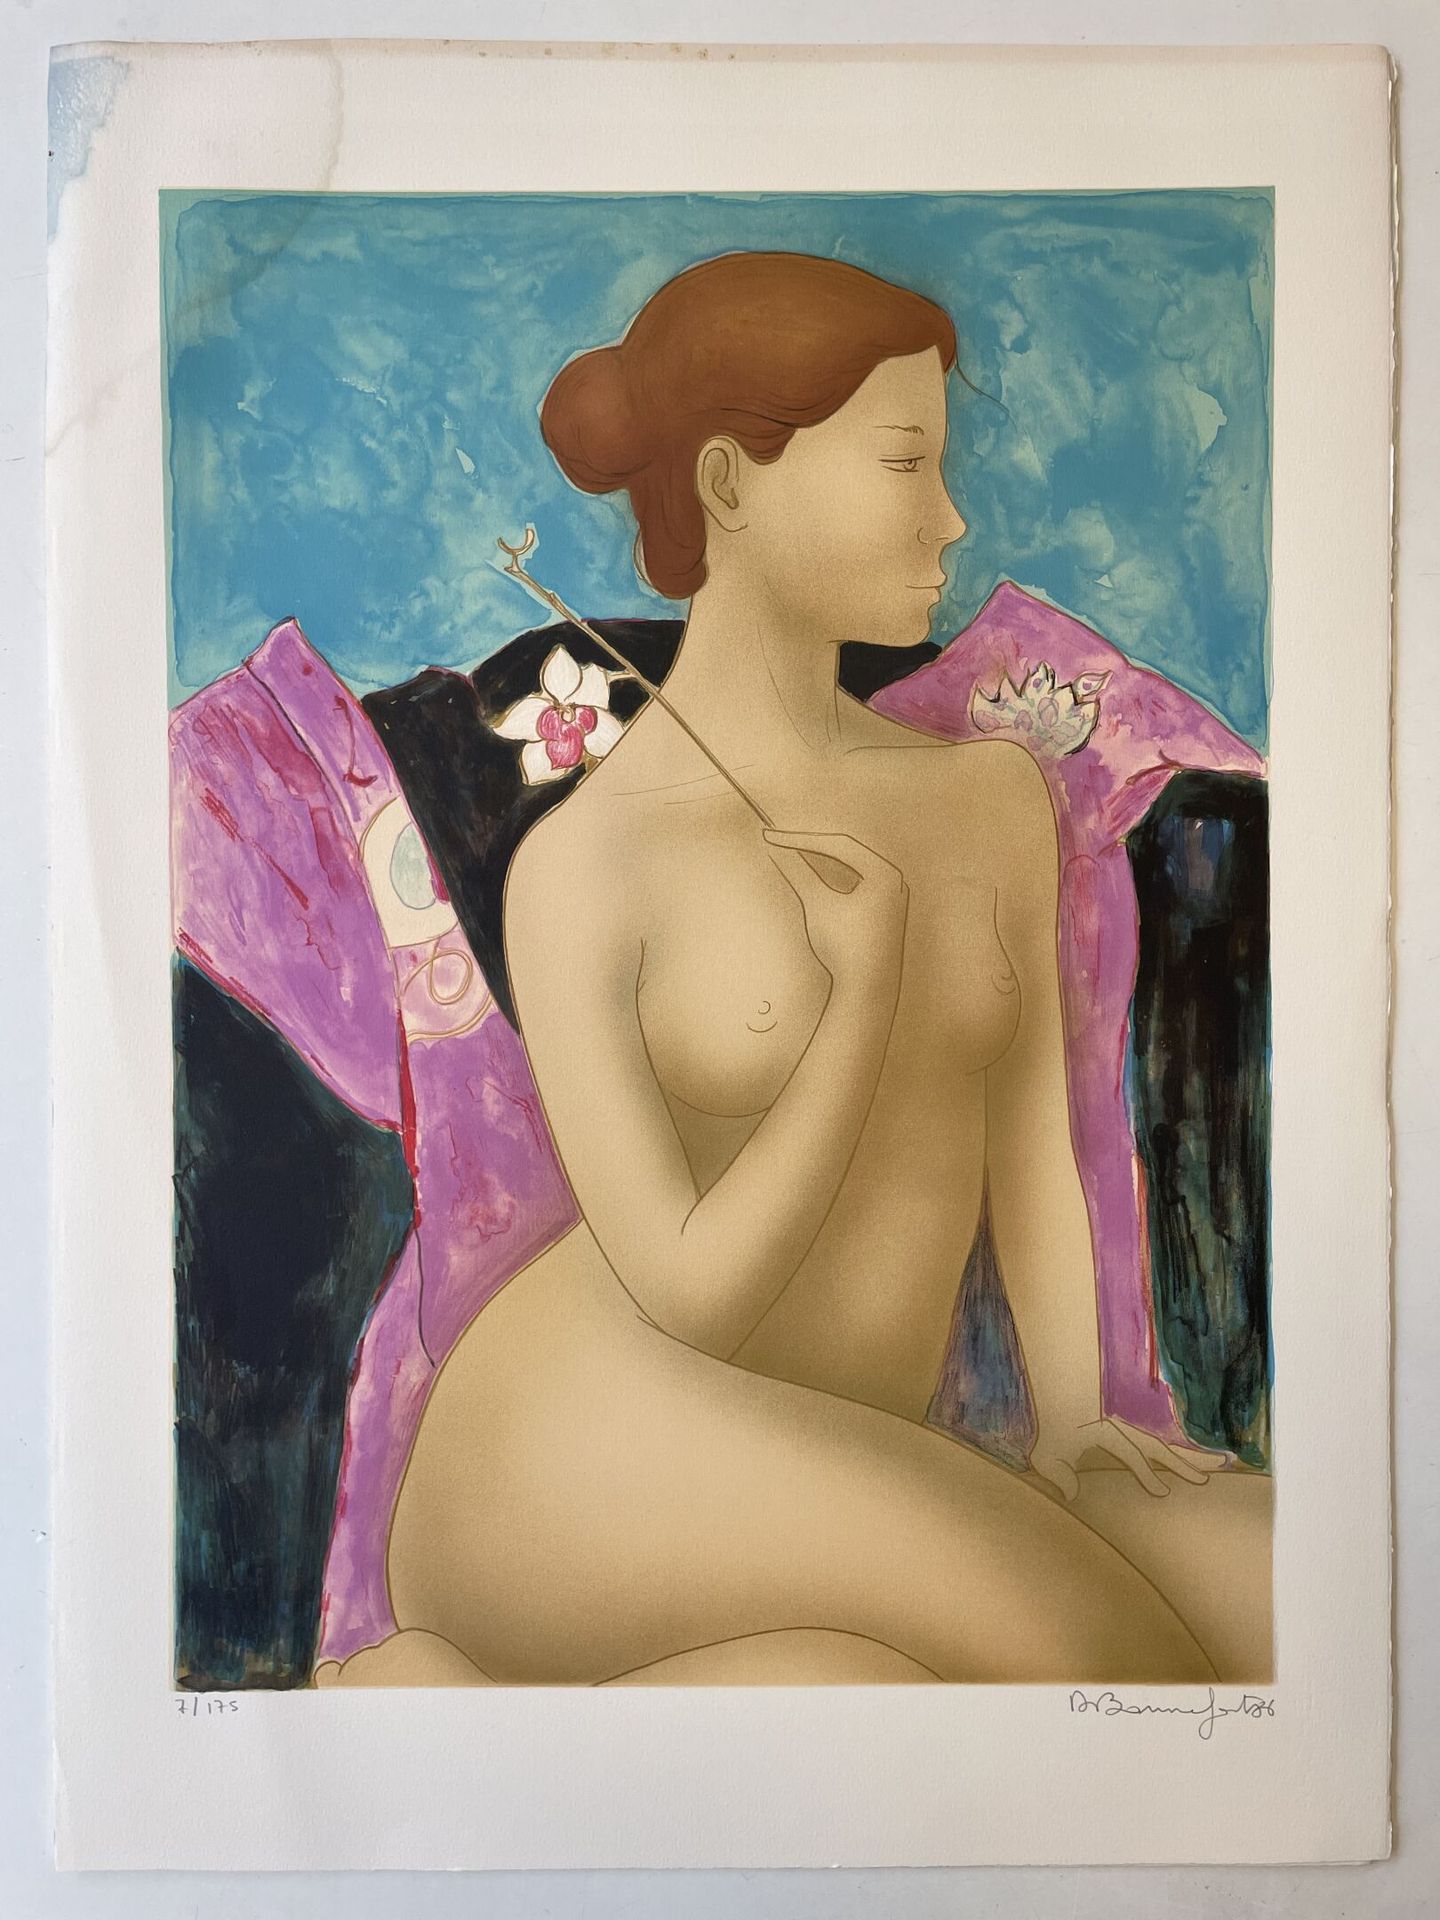 Alain BONNEFOIT (1937) 带着兰花的女人，1986年。
一套5张彩色平版画纸。
有签名、编号和日期。
73 x 60厘米。
有污点和褶皱。